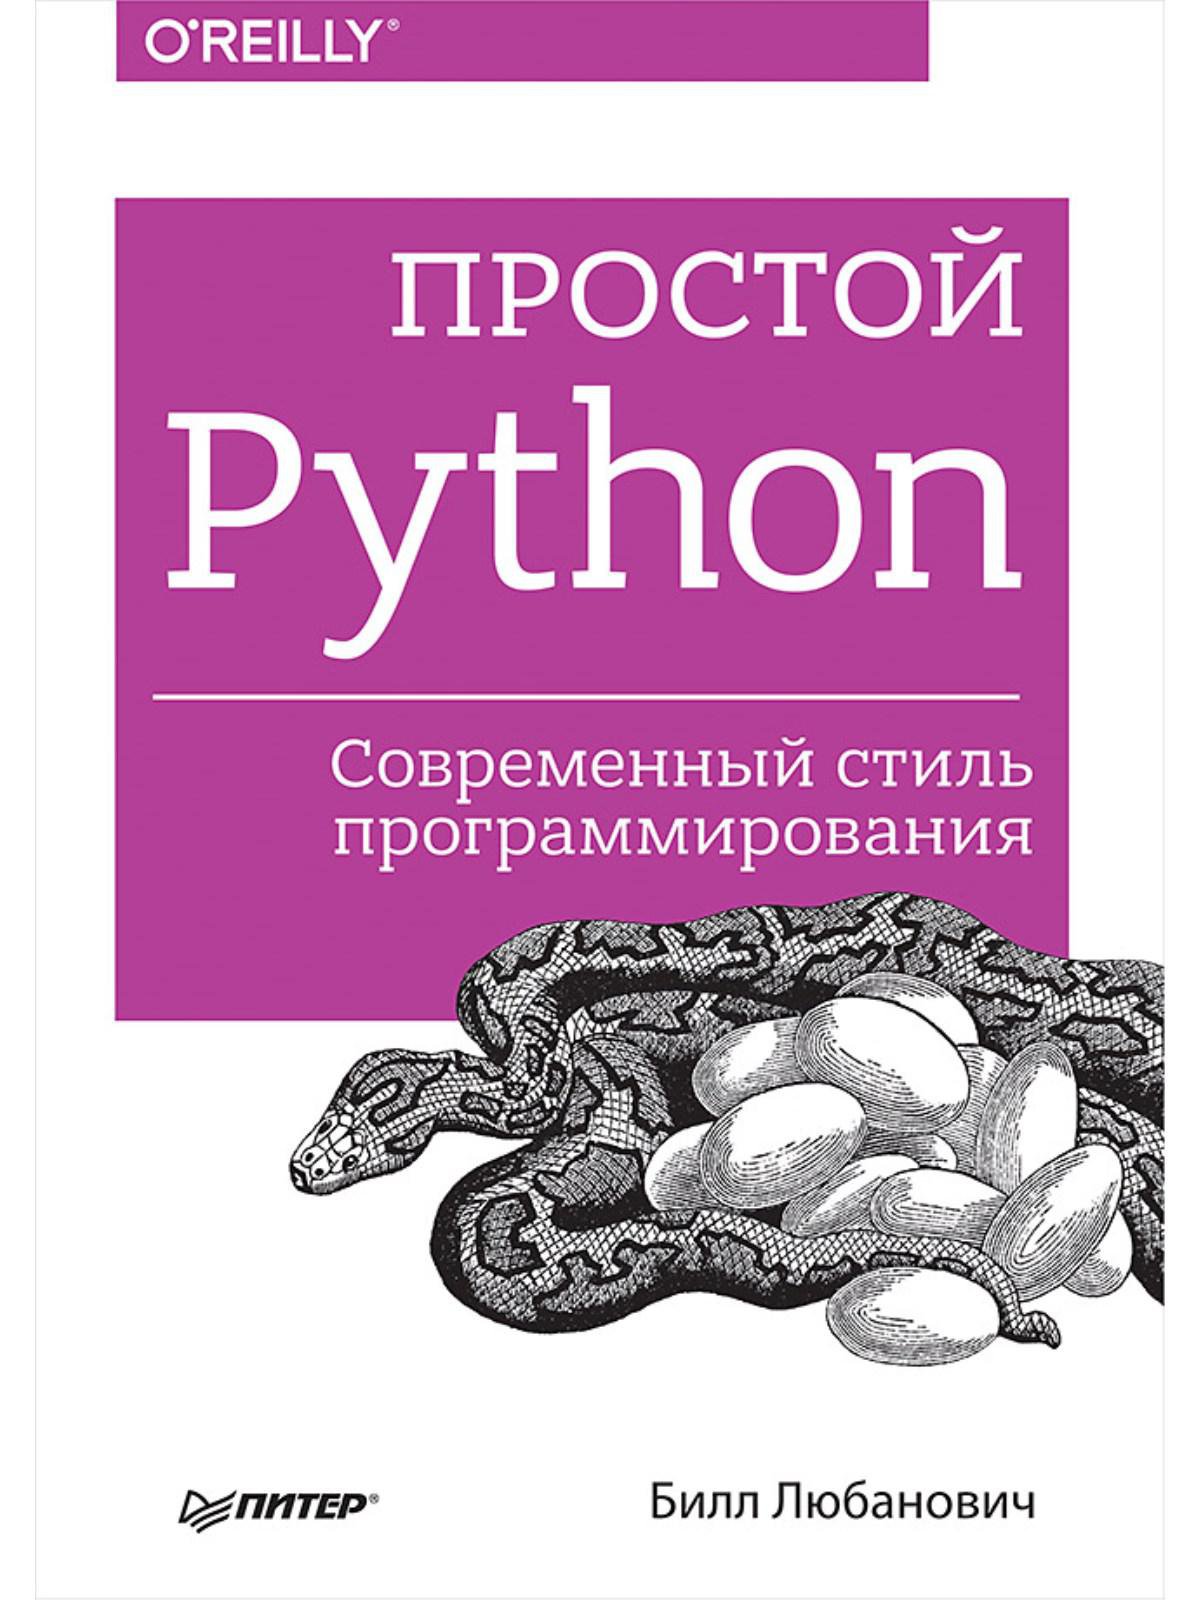 Задачи python книга. Любанович б простой Python. Современный стиль программирования. Книга простой Python. Современный стиль программирования. Простой Python. Современный стиль программирования Любанович Билл книга. Книги по питону.